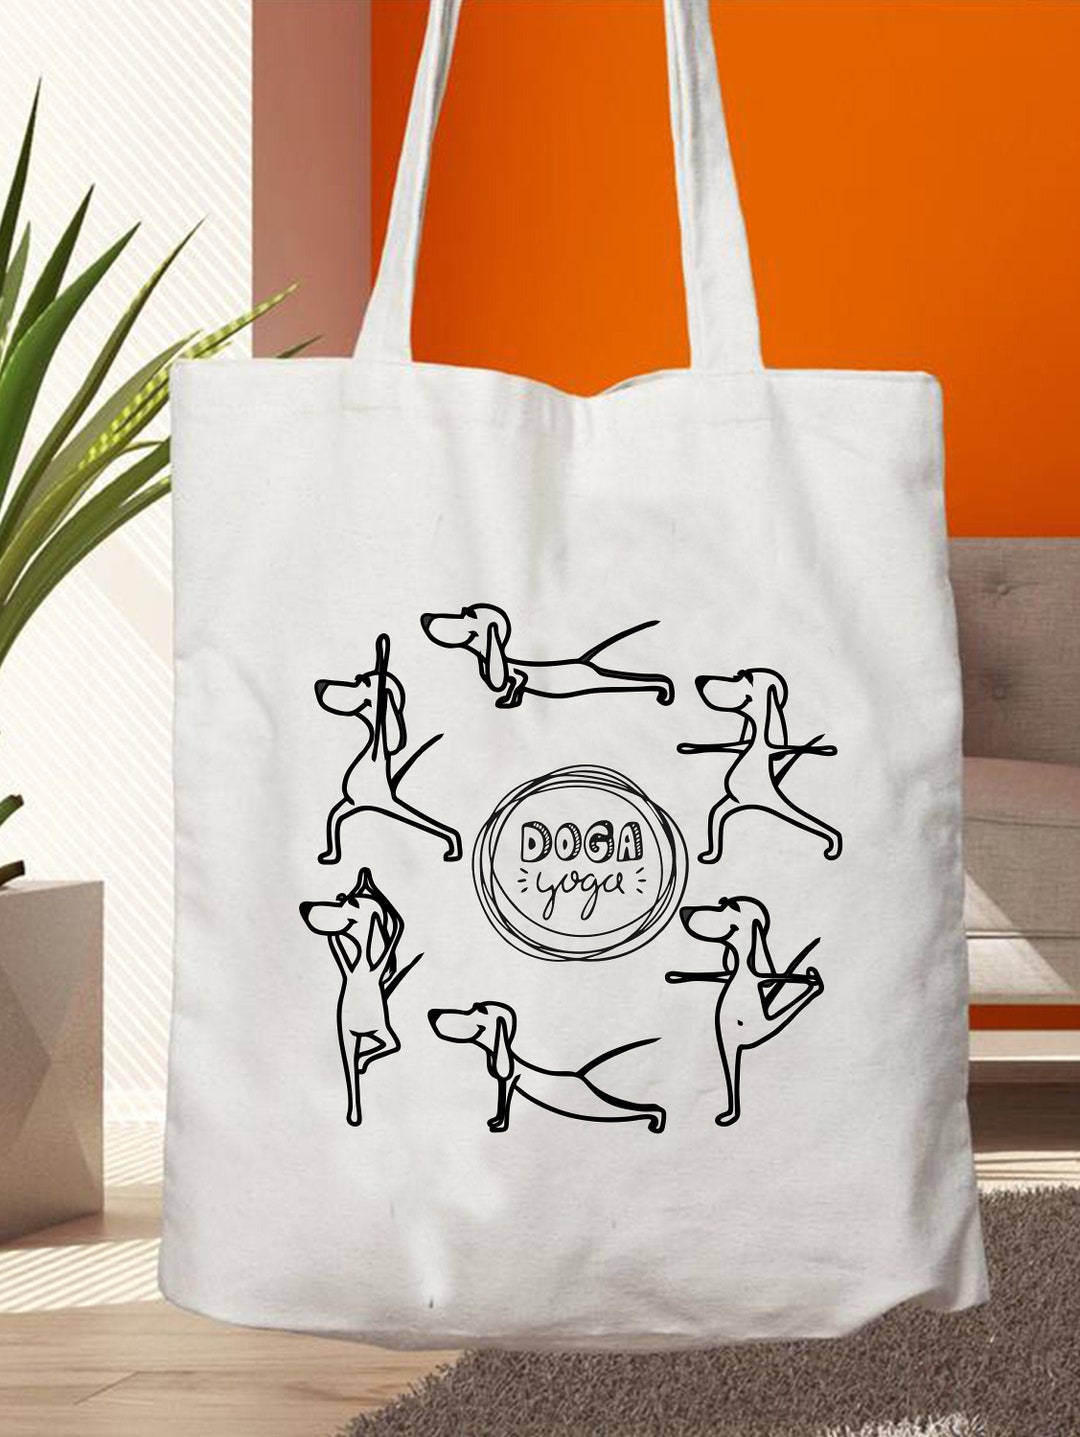 Doga yoga borse in cotone Yoga dog Shopping Bag Regali per gli amanti dei  cani Dog Tote Bag Shopping Bag -  Italia